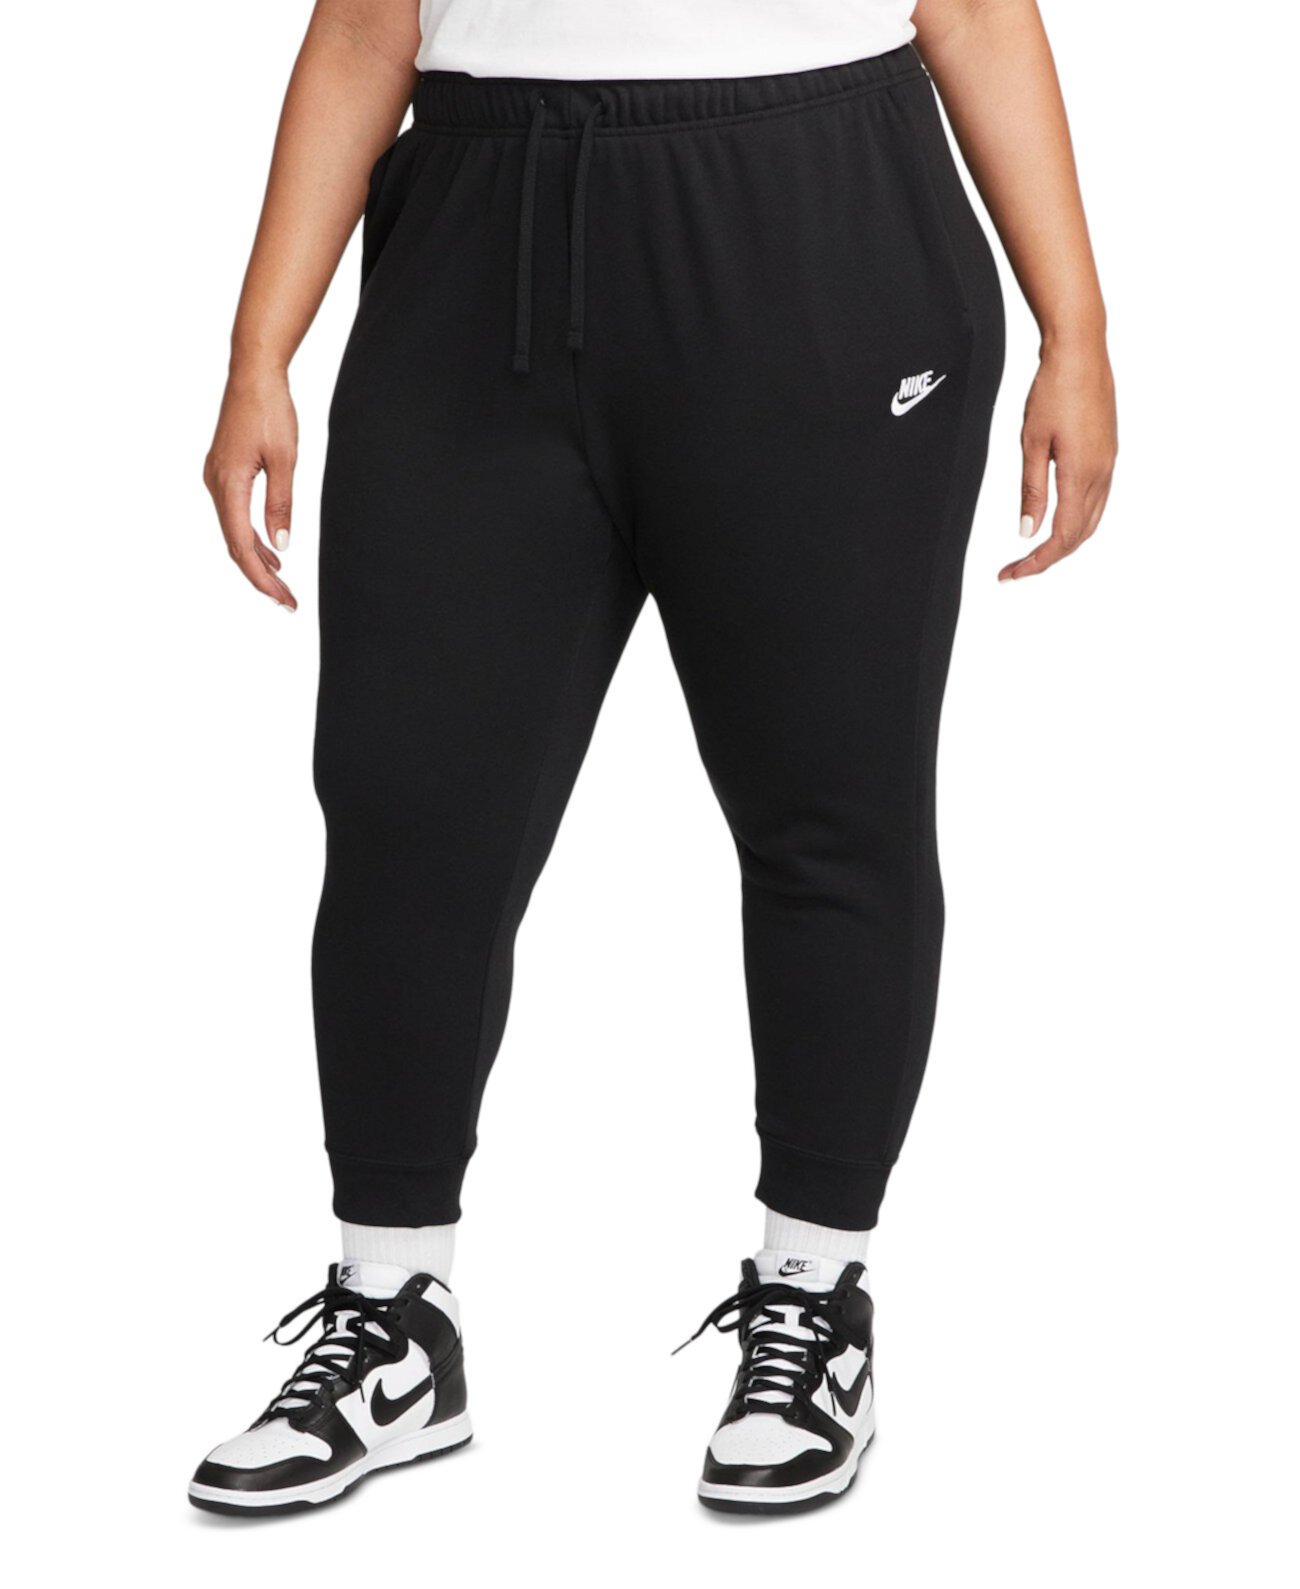 Спортивная одежда больших размеров Клубные флисовые спортивные штаны со средней посадкой Nike